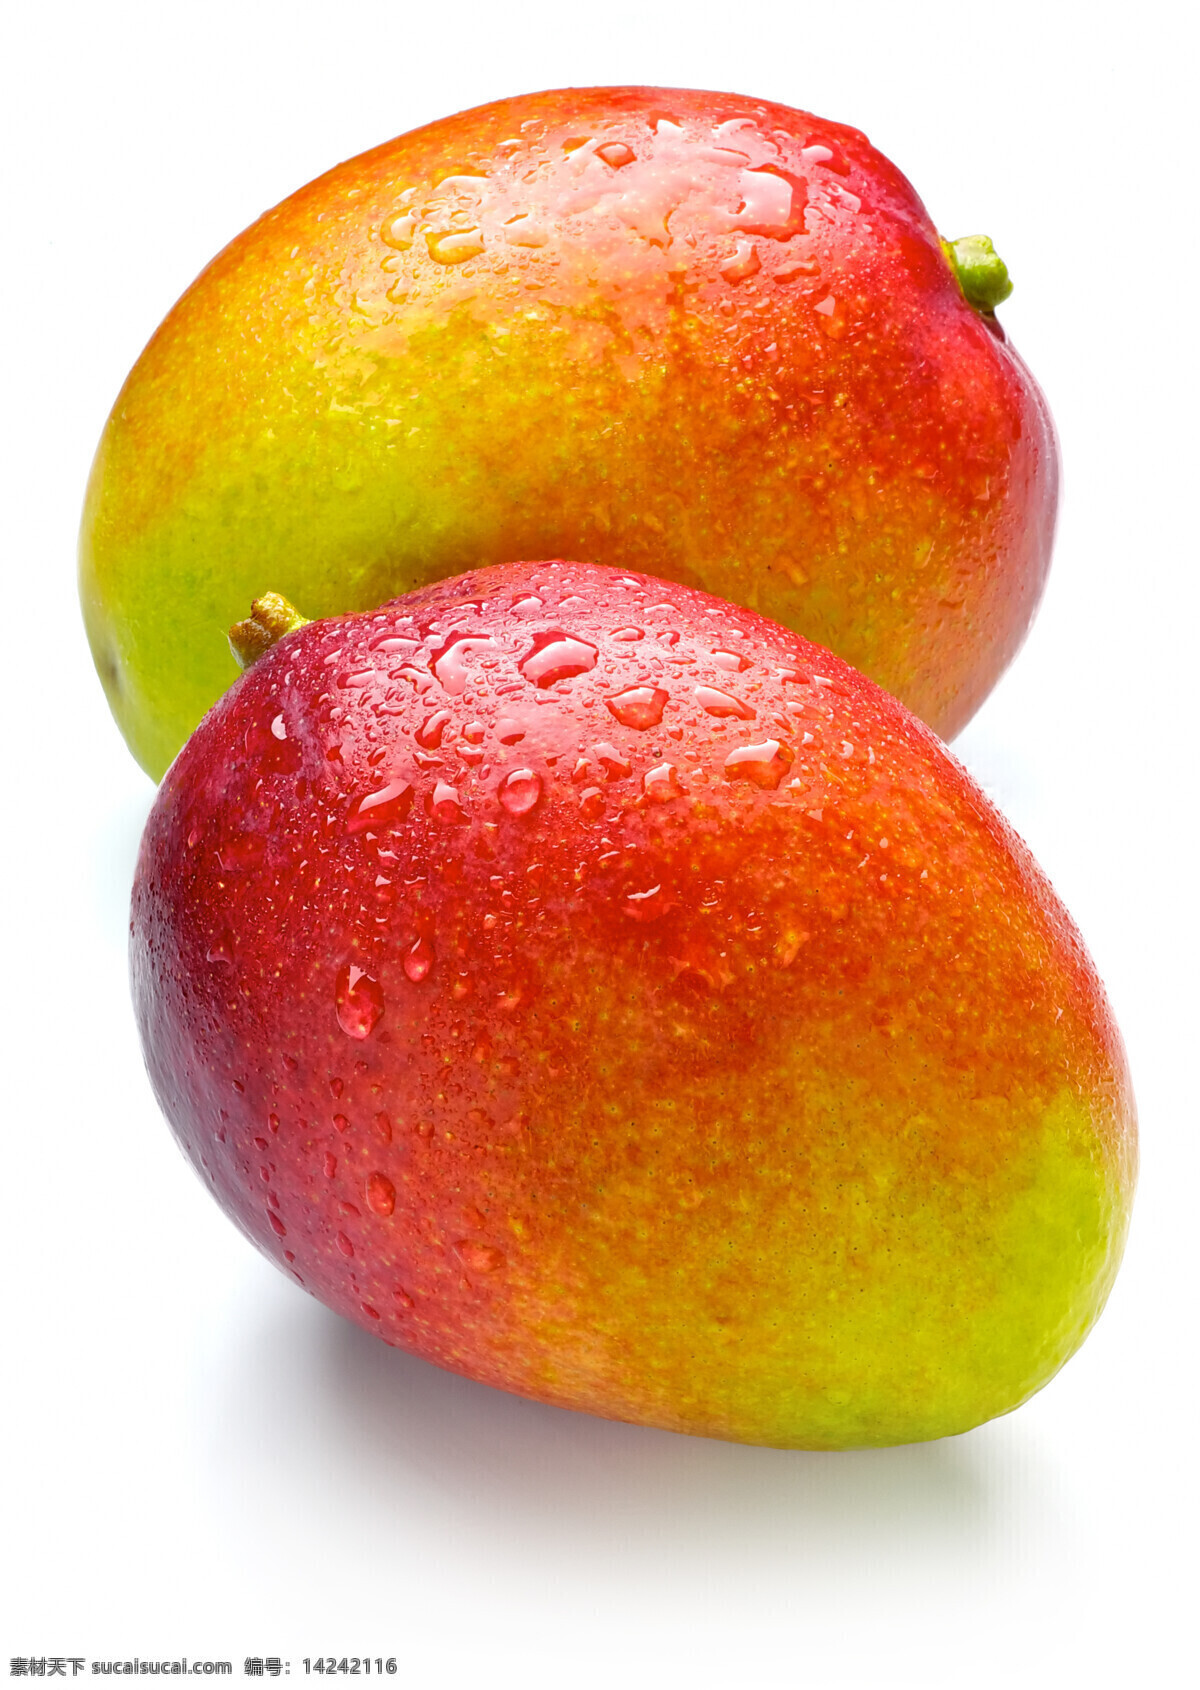 芒果 水果 水果素材 生鲜水果 水果集合 葡萄 香蕉 梨子 山竹 超市水果 百货店 草莓 胡萝卜 牛奶水果 新鲜水果 餐饮美食